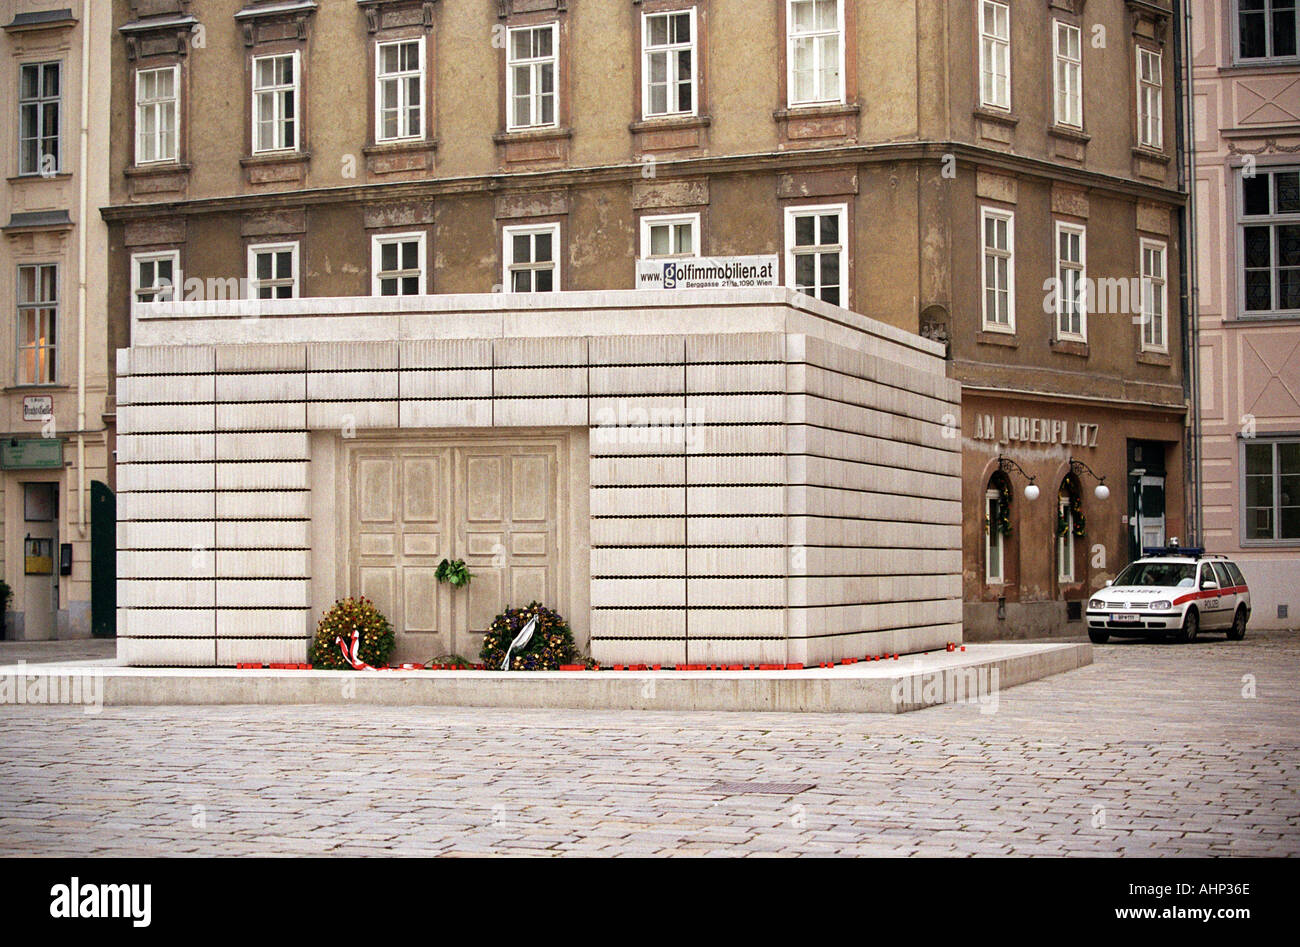 Le monument commémoratif de guerre juive par Rachel Whitehead à Vienne Autriche Banque D'Images